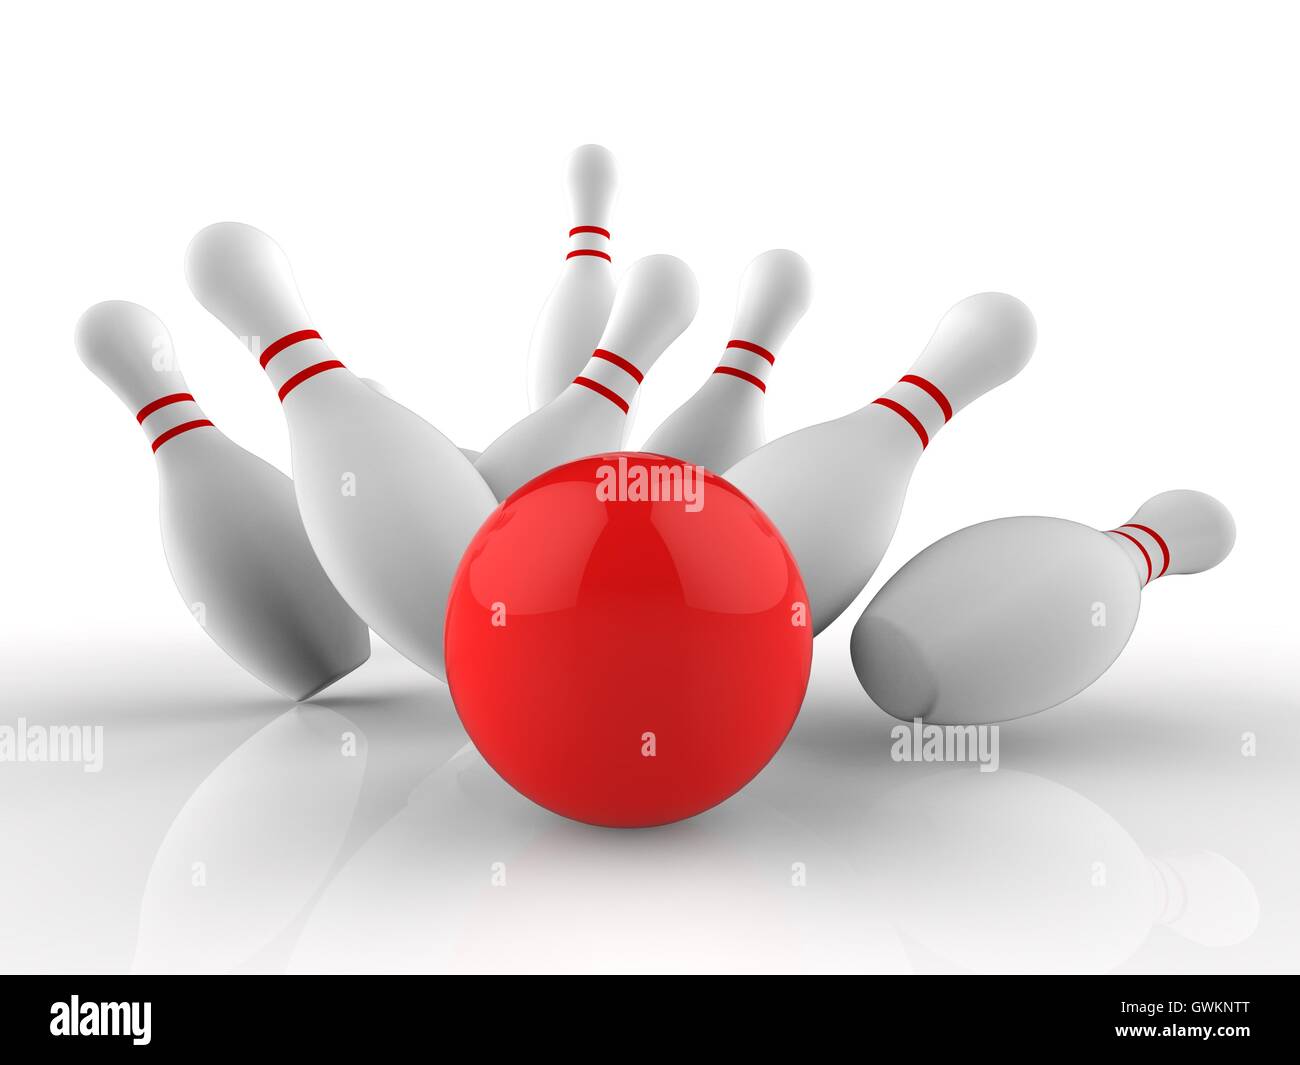 Bola de boliche vermelha e skittles brancos espalhados isolados em fundo  preto conjunto de jogos renderização 3d